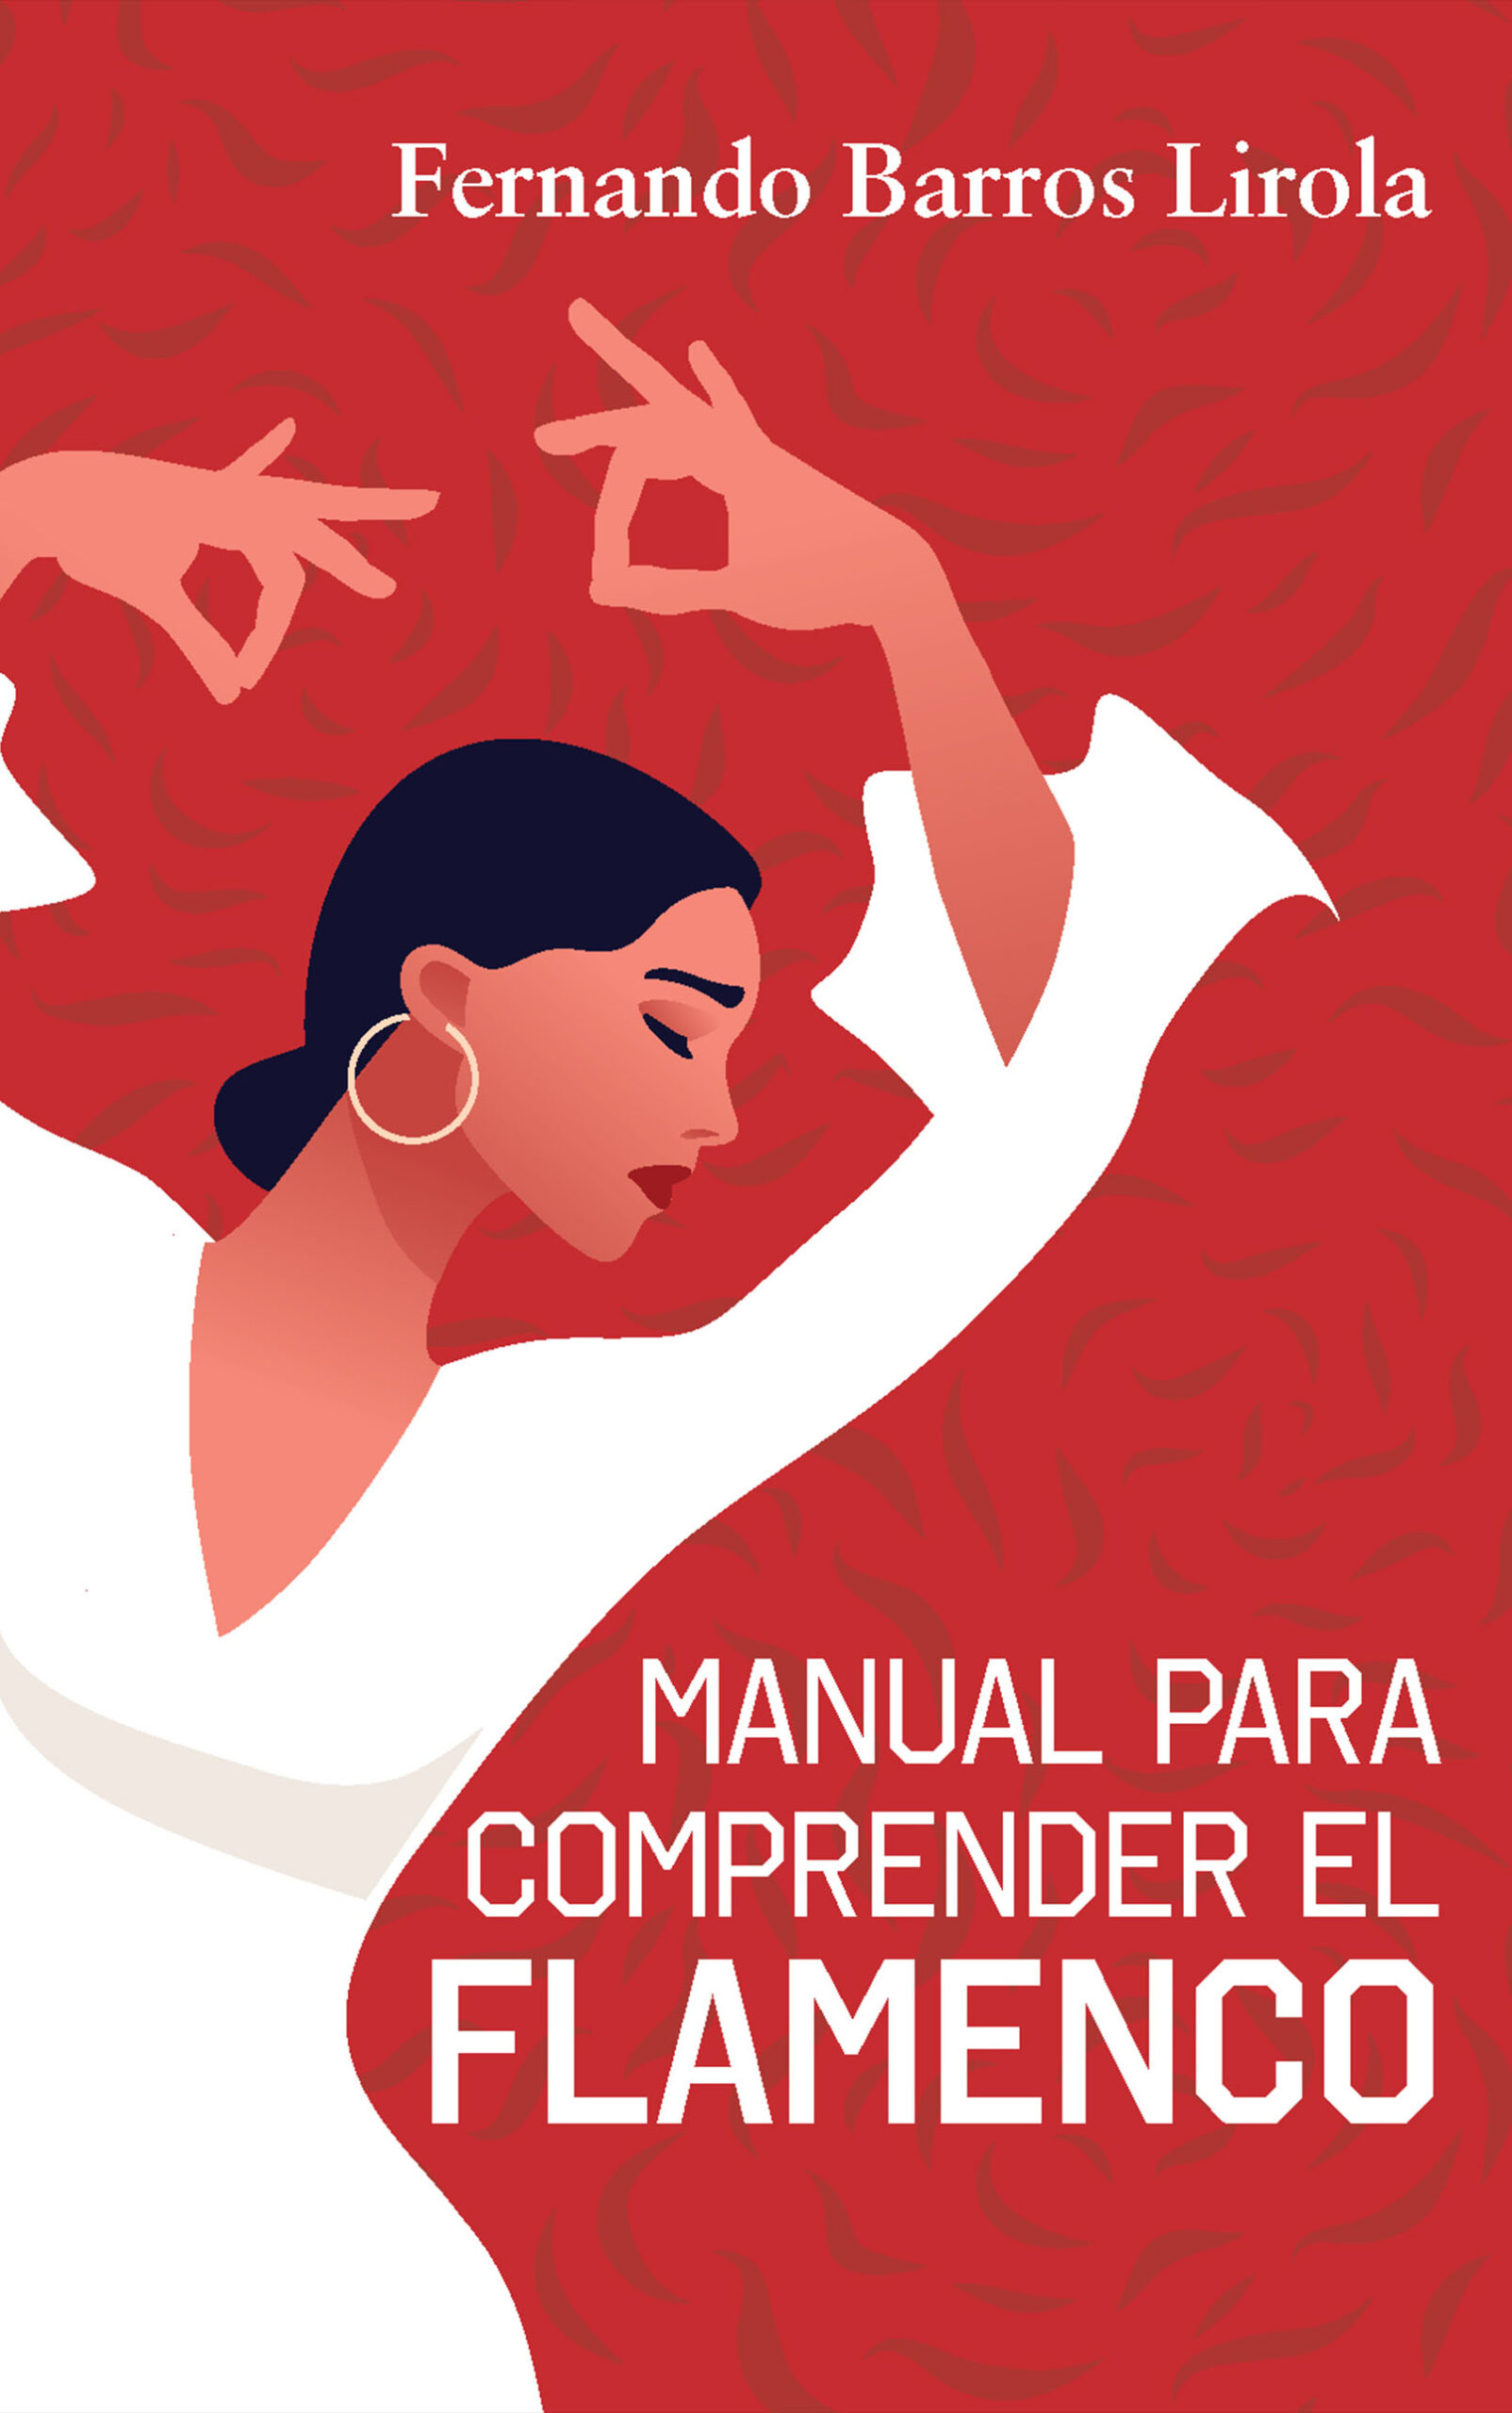 Manual para comprender el flamenco, de Fernando Barros Lirola